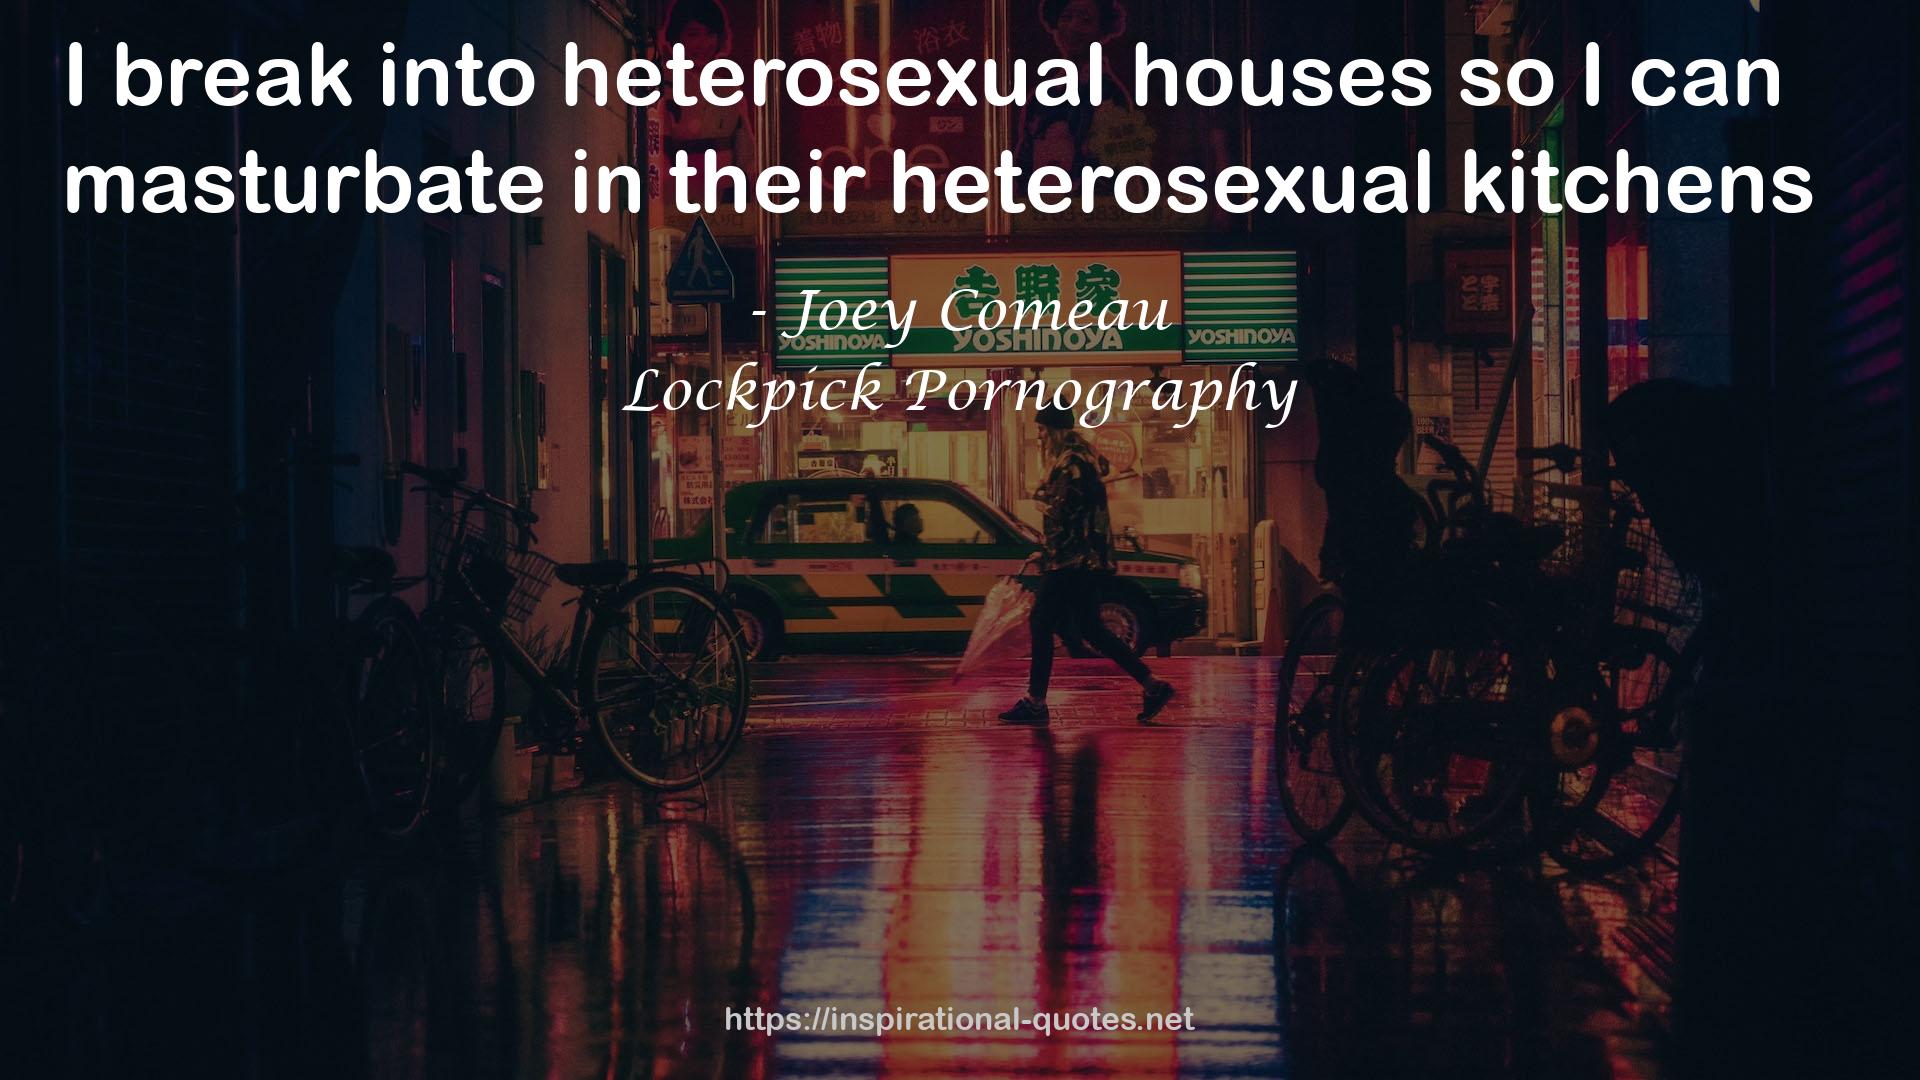 heterosexual houses  QUOTES